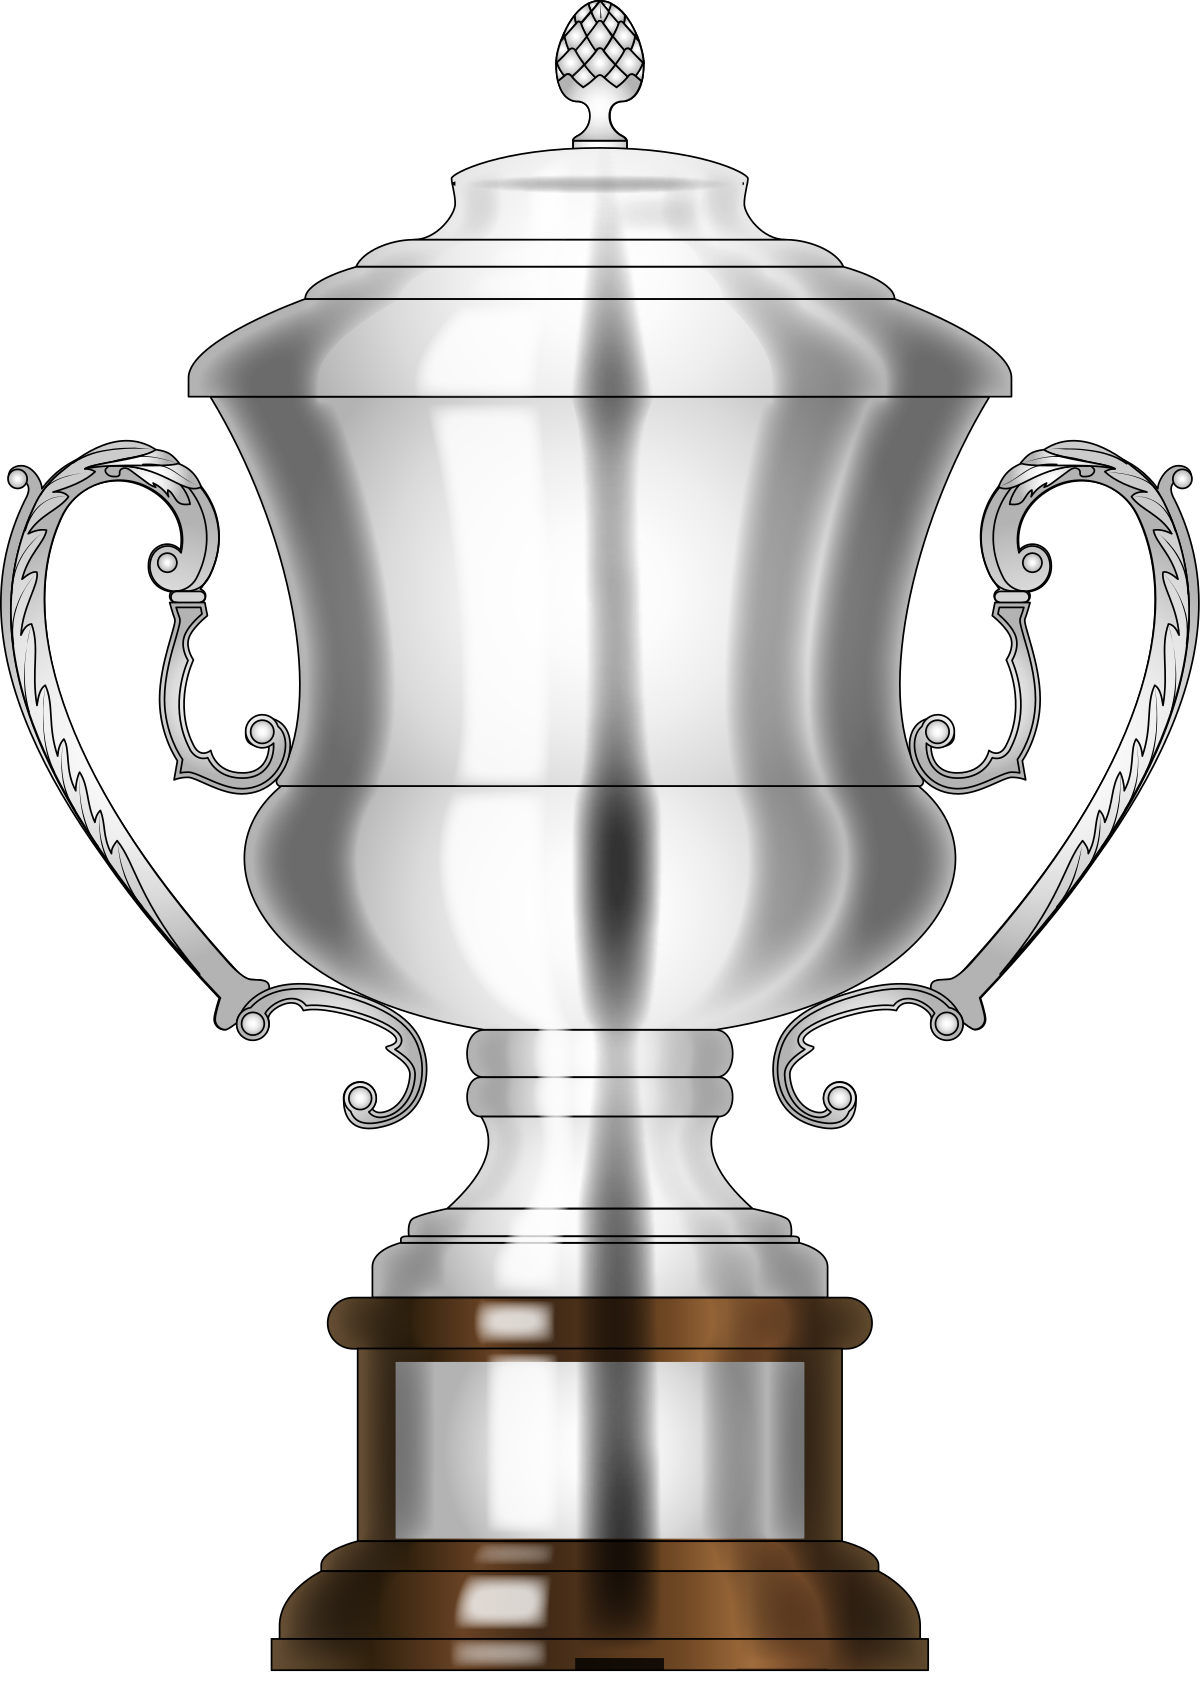 Coppa Italia – Wikipédia, a enciclopédia livre